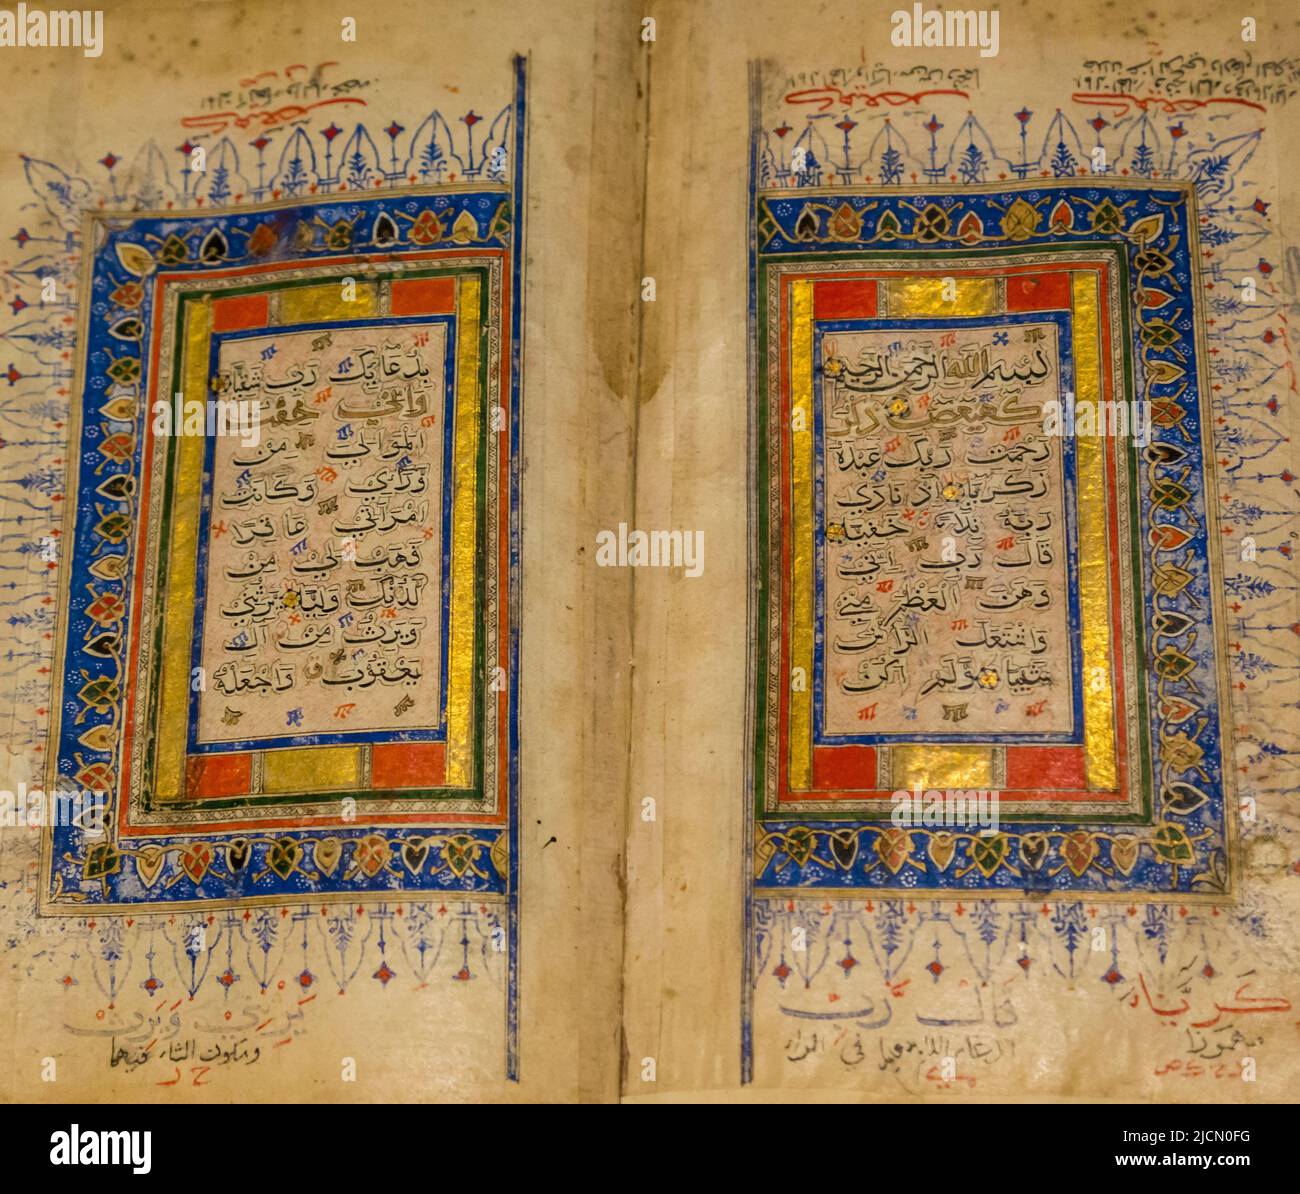 Indian Qur'an, 15th century.  This book uses the Bihari script.  Asian Civilisations Museum, Republic of Singapore Stock Photo